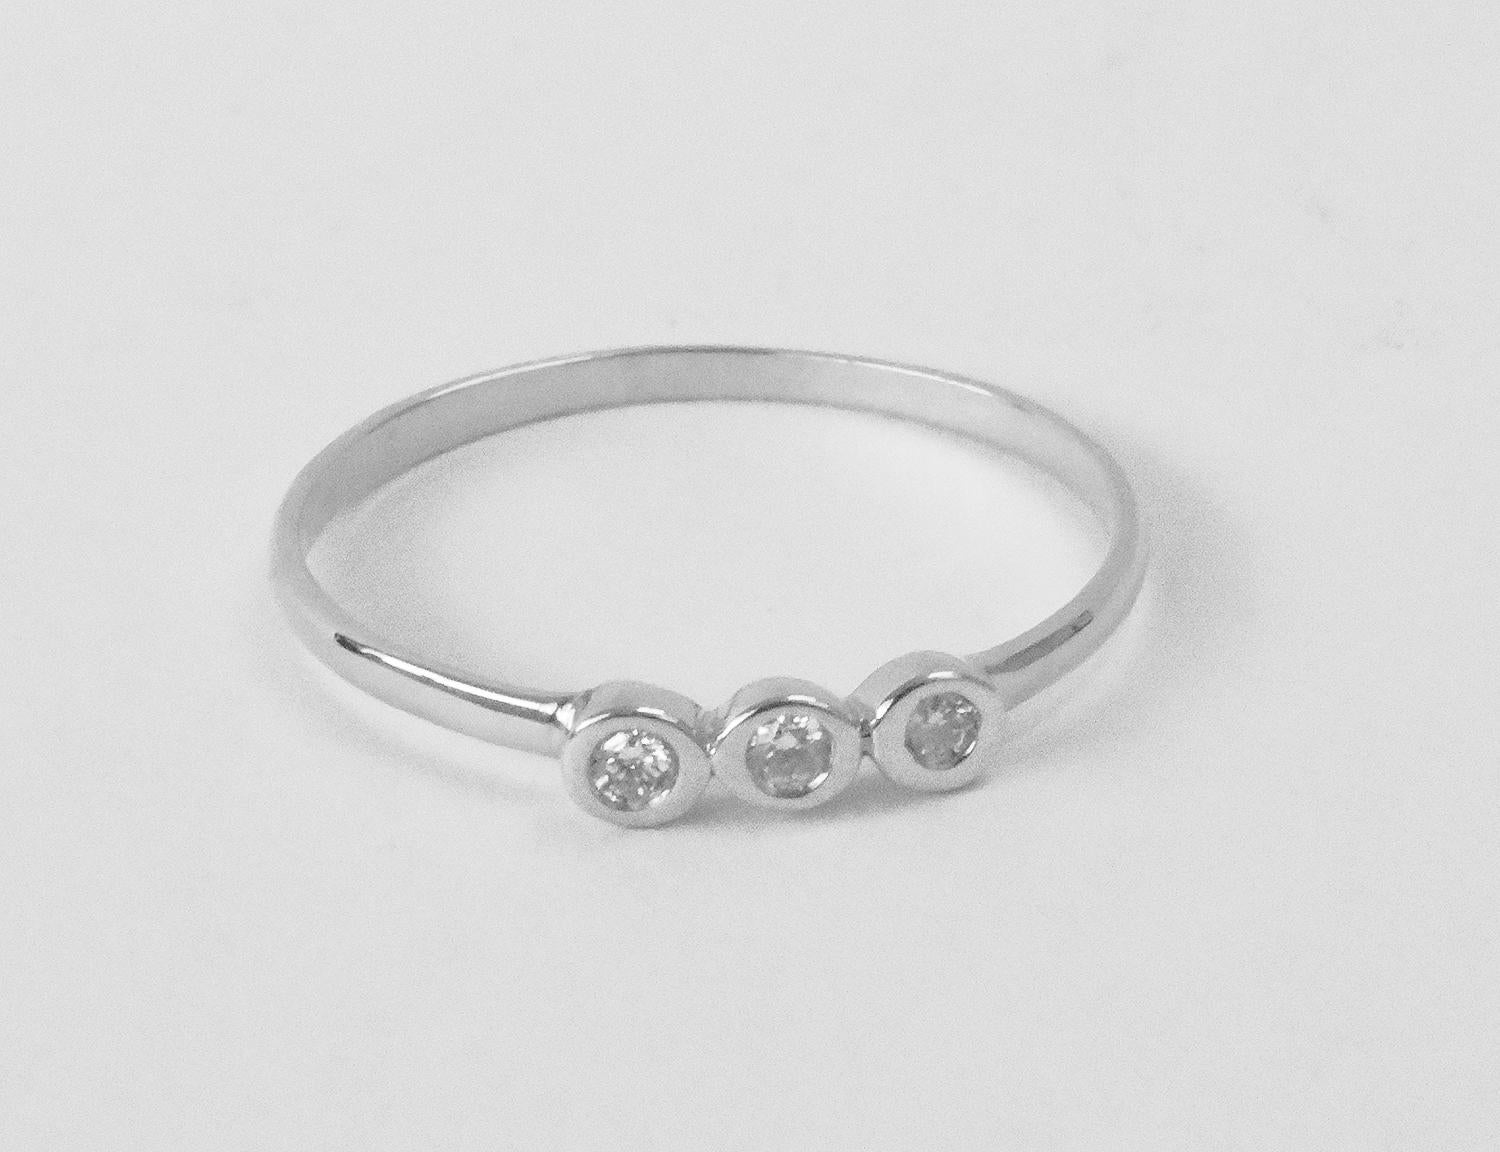 For Sale:  18k Gold Diamond 1.9 mm Ring Bezel Setting Three Diamond Ring Trio Diamond Ring 4